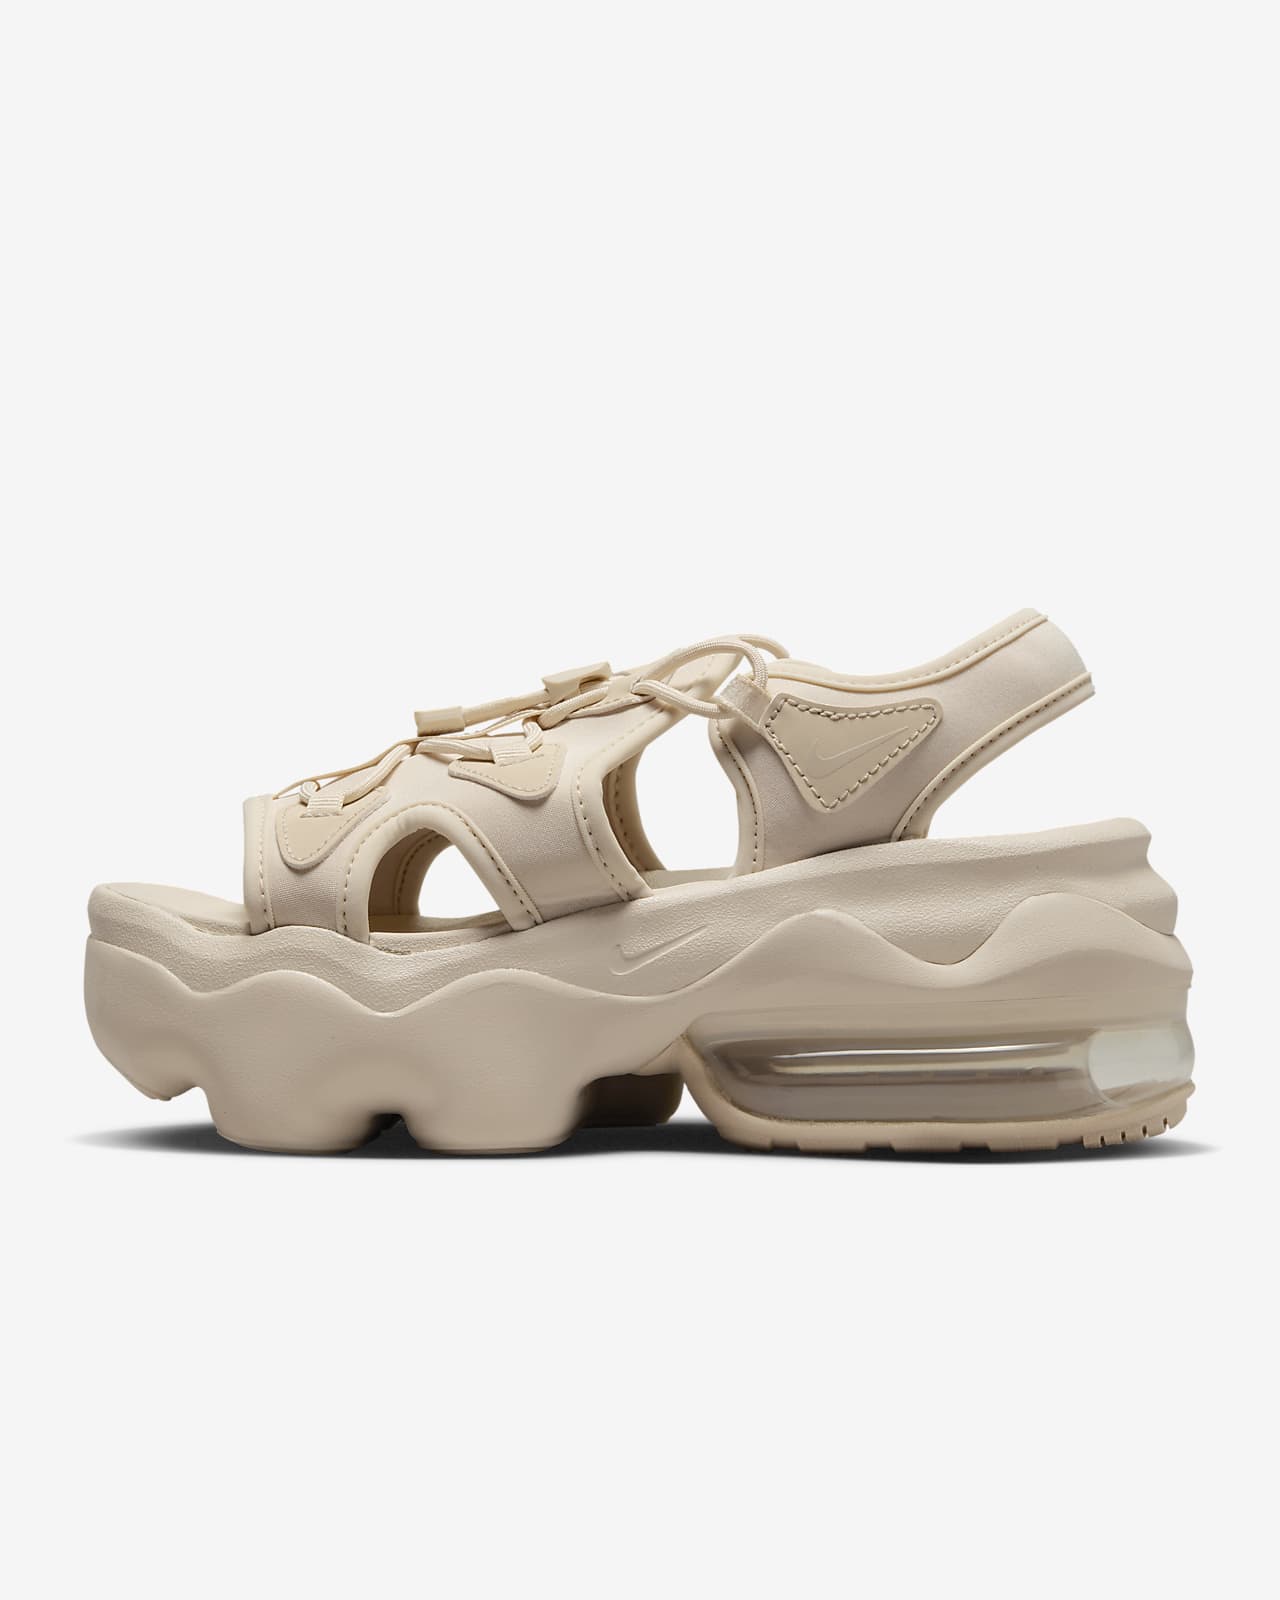 Nike Air Max Koko Women's Sandals